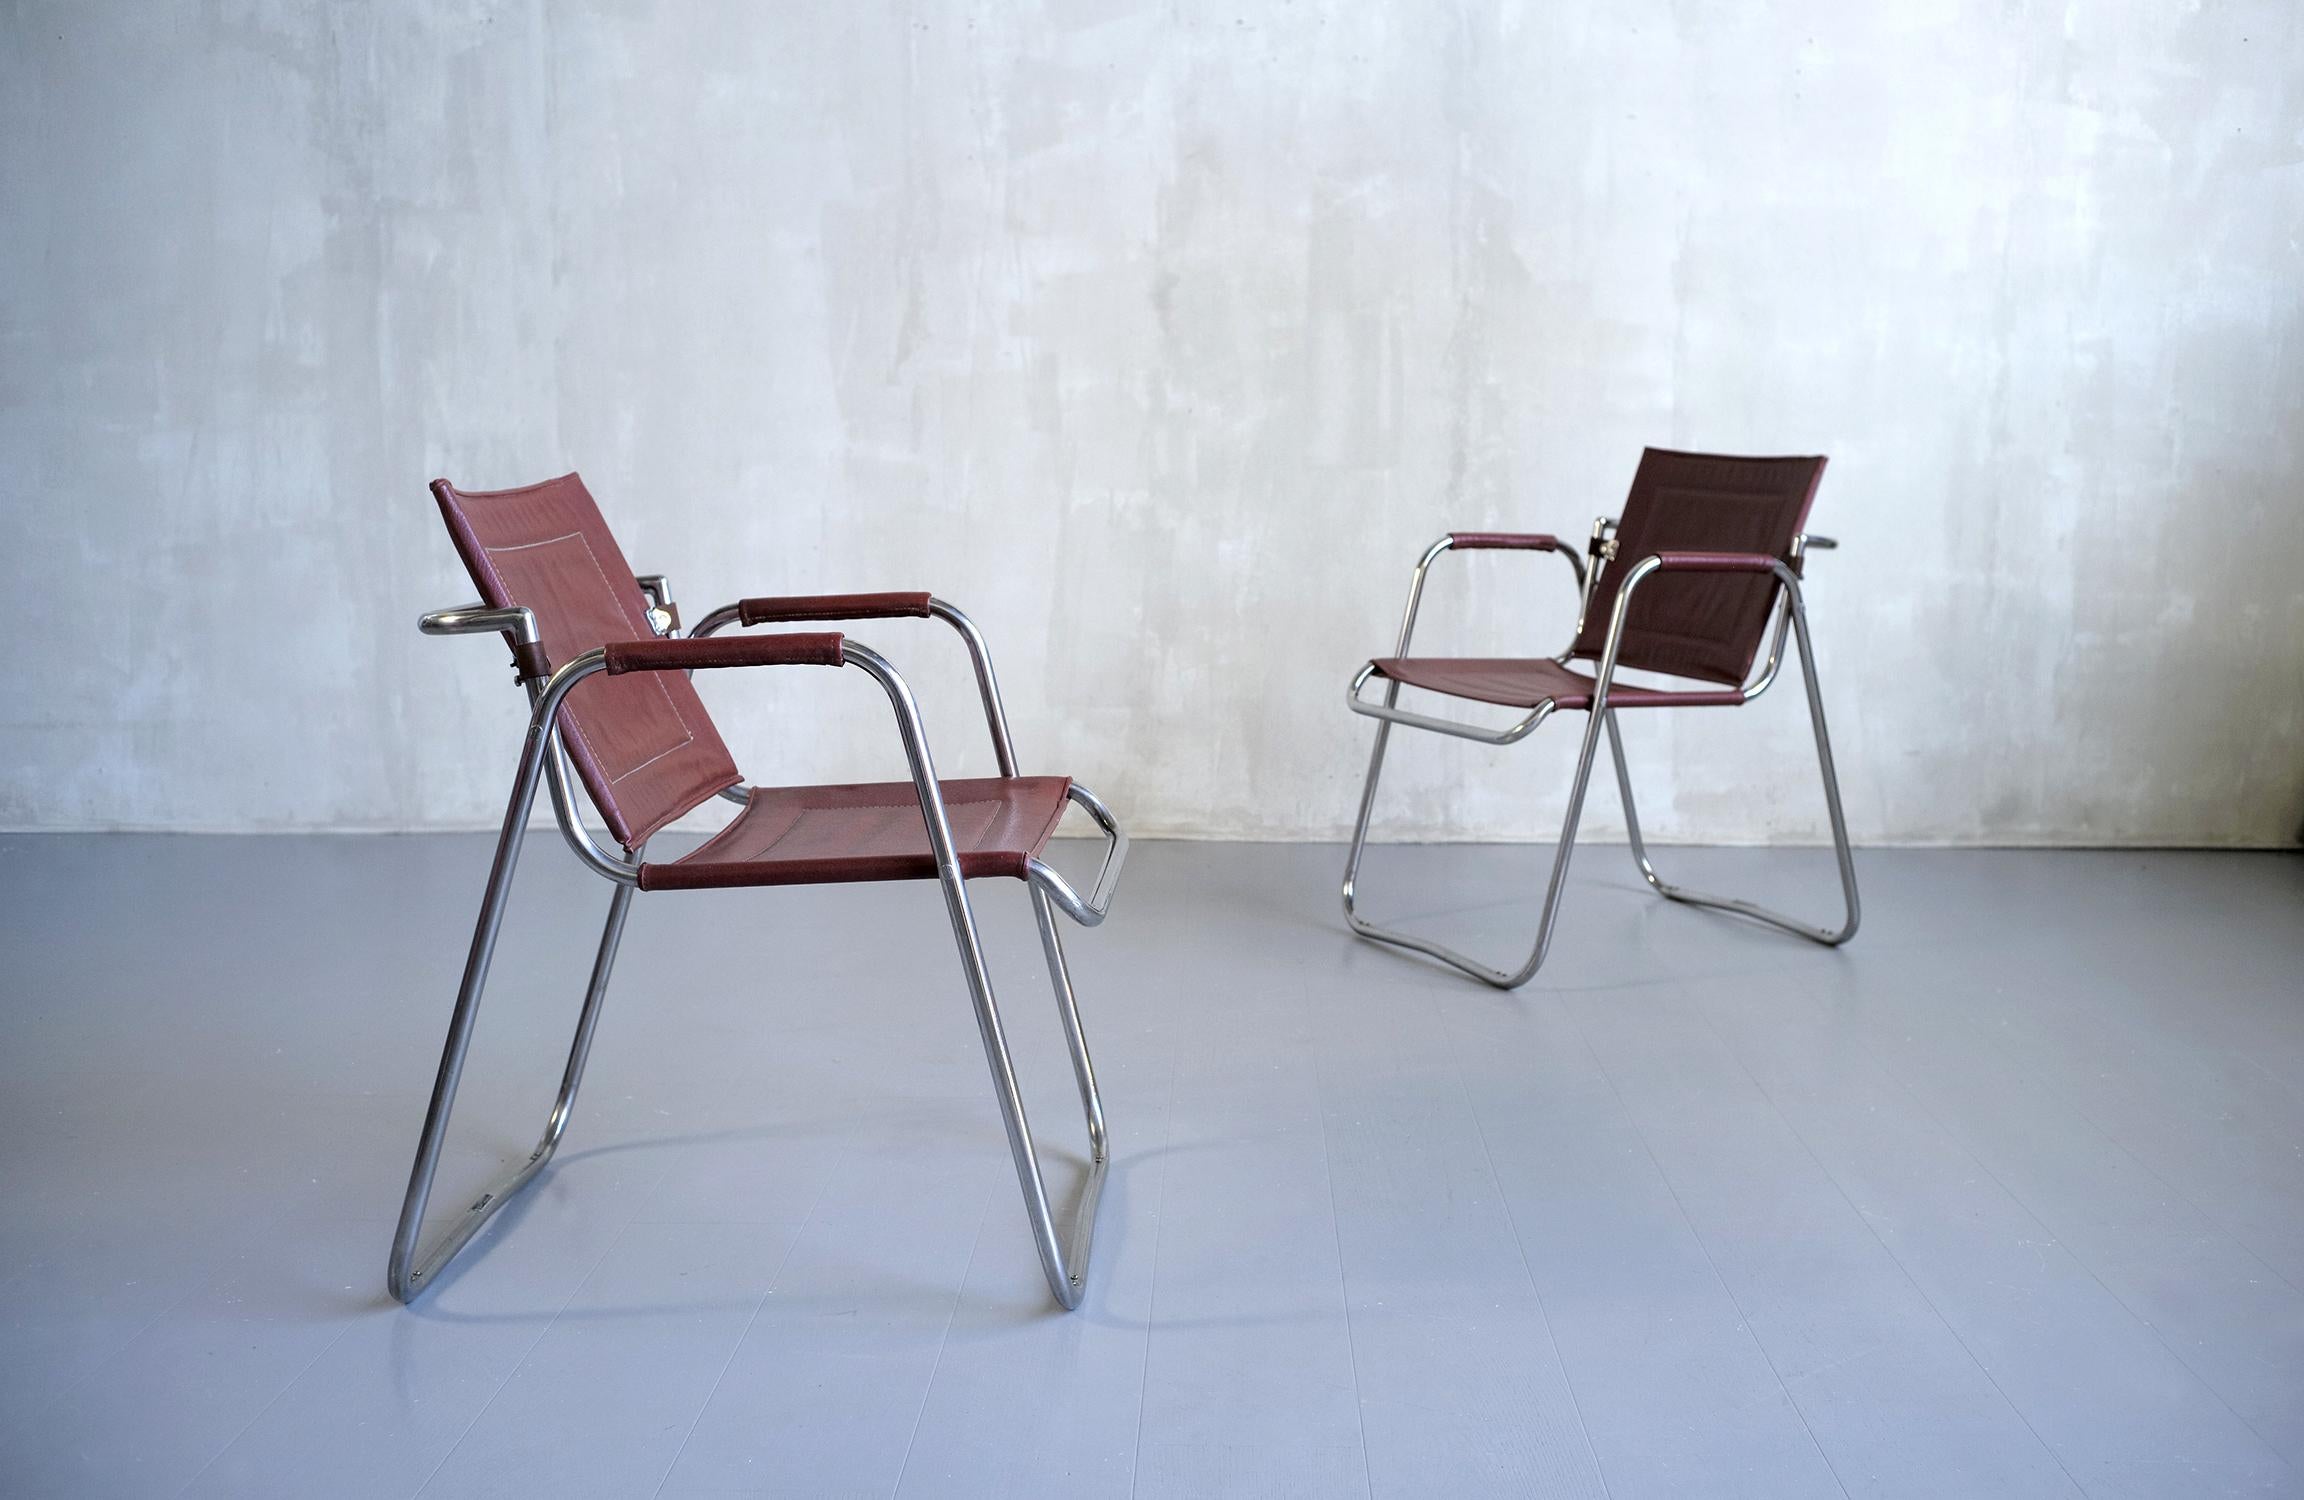 Paire de fauteuils en métal tubulaire nickelé créés par Jacques Hitier, produits par Tubauto dans les années 1950. Le siège, les accoudoirs et le dossier sont recouverts de leur similicuir bordeaux d'origine. Le dossier est pivotant et muni